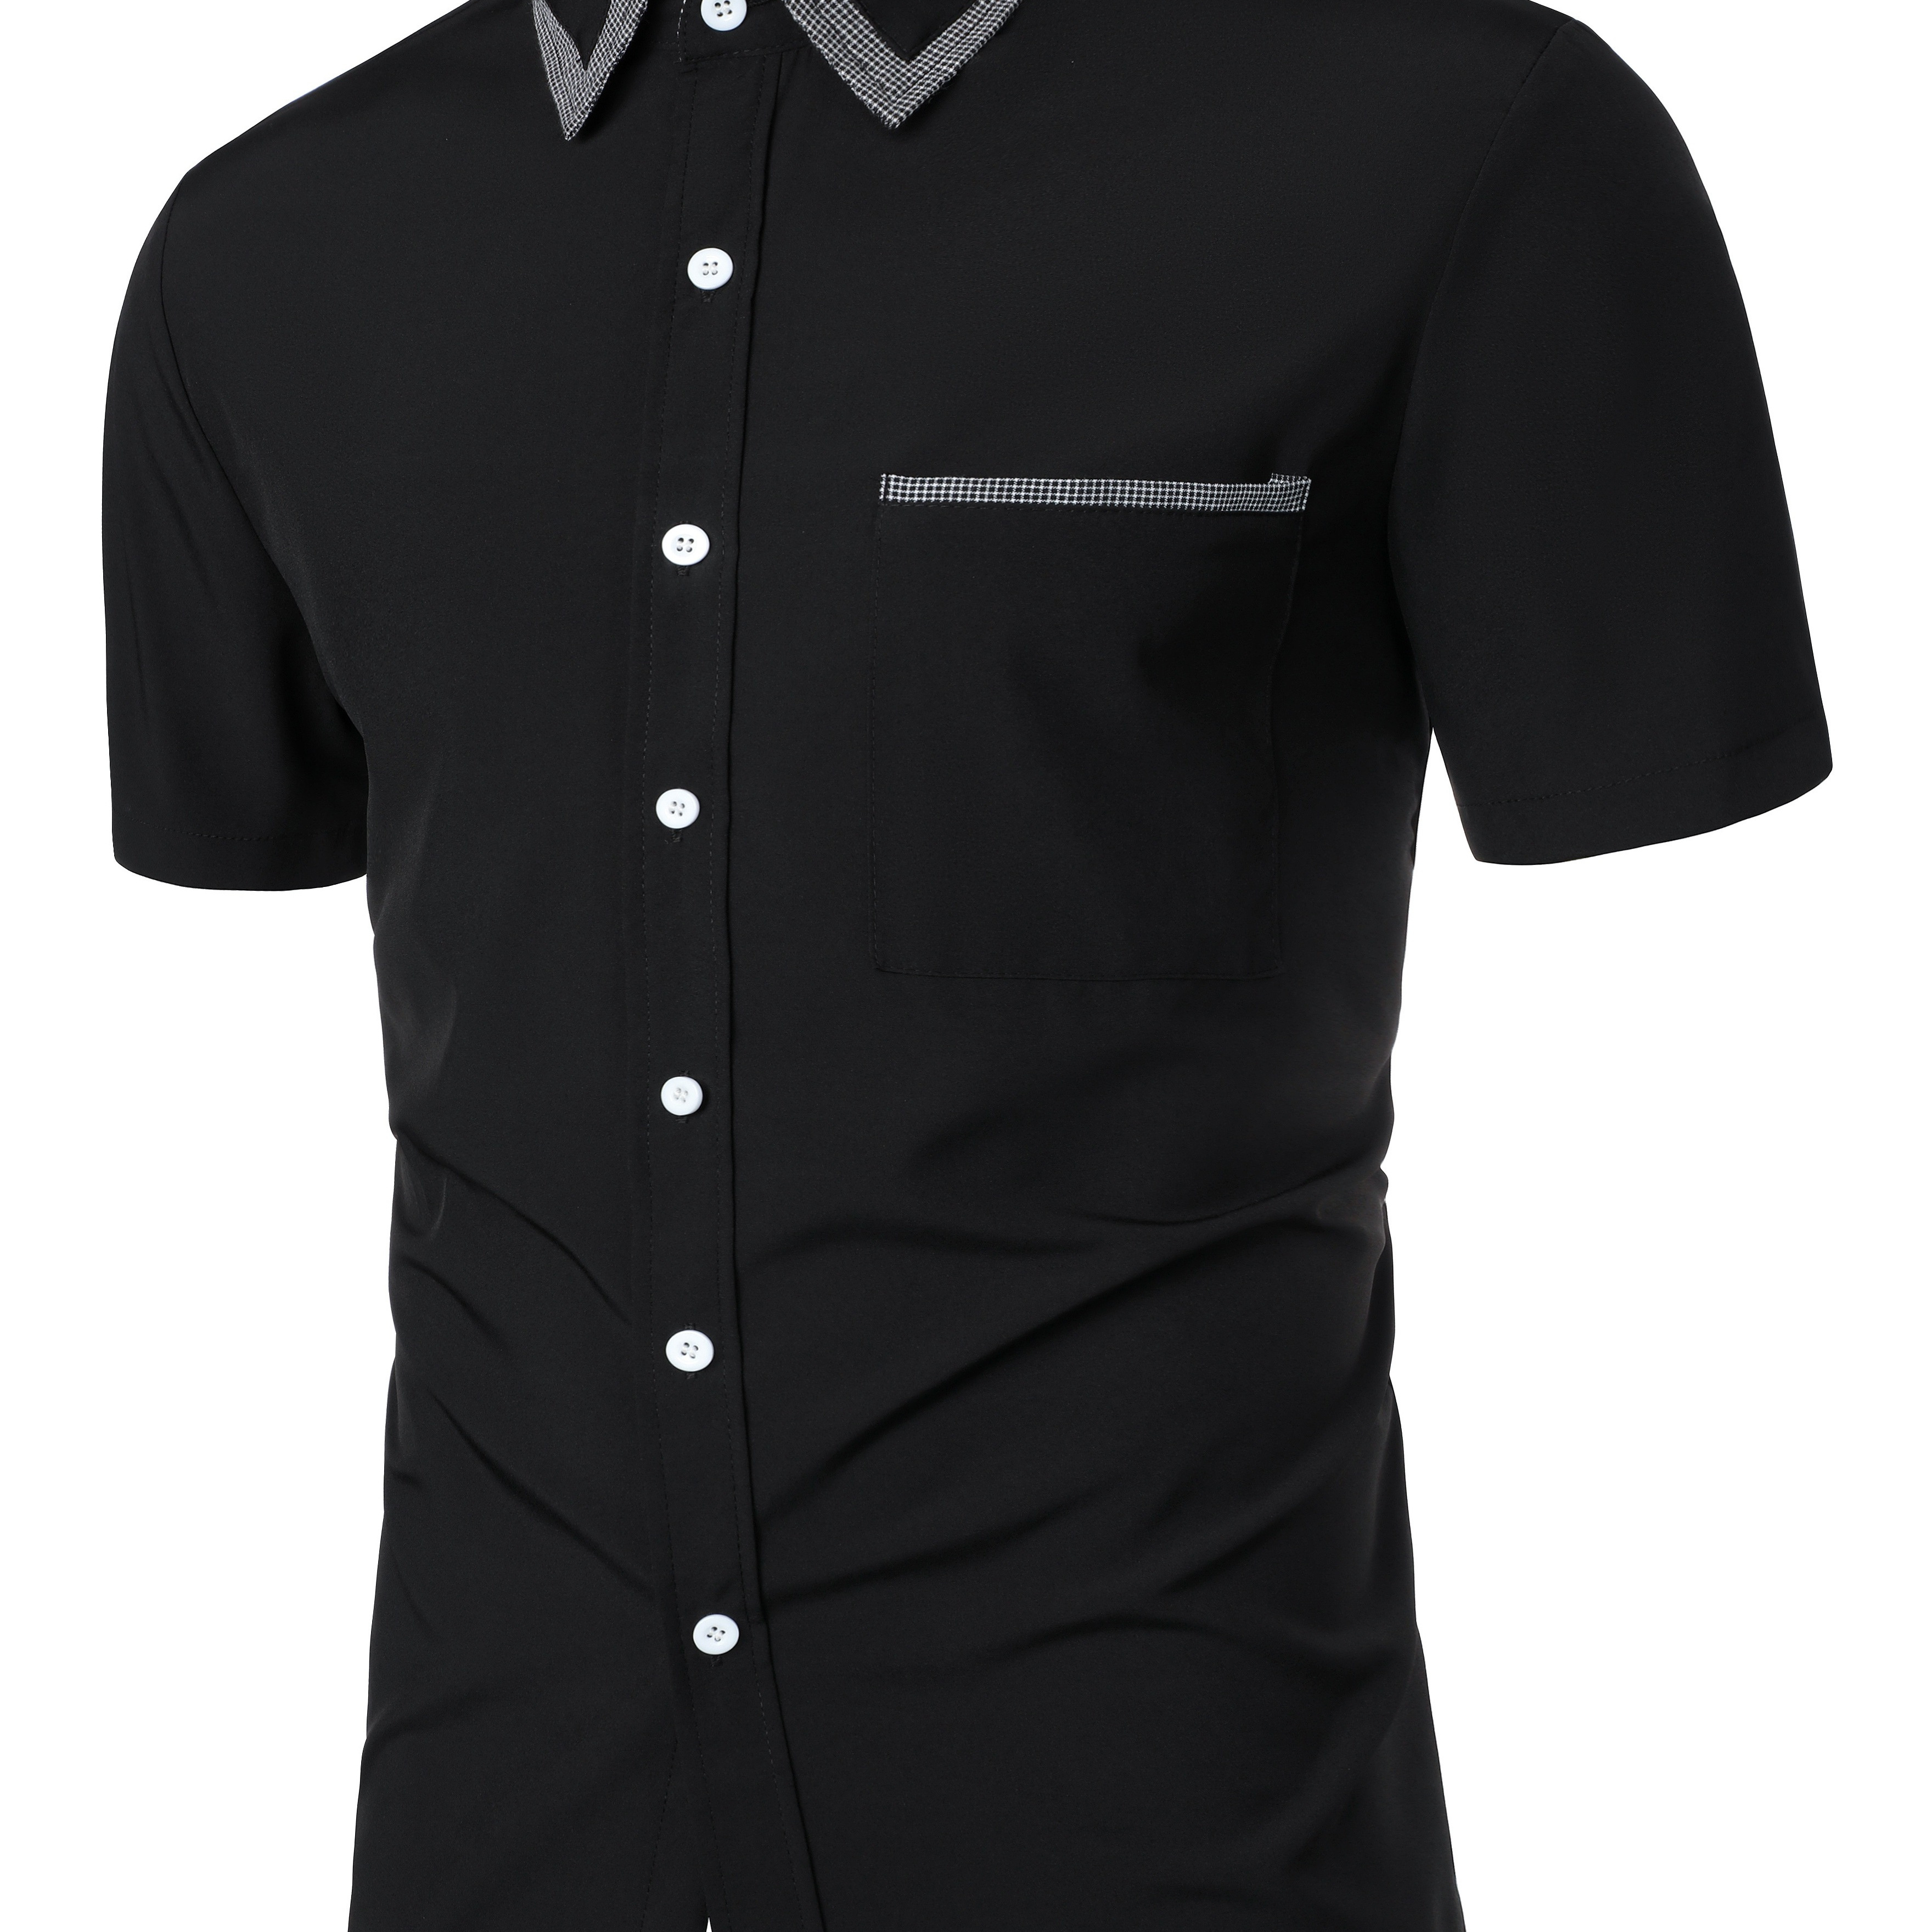 Men's Linen Short Sleeve Shirt, Casual Comfy Shirt For Summer, Men's ...